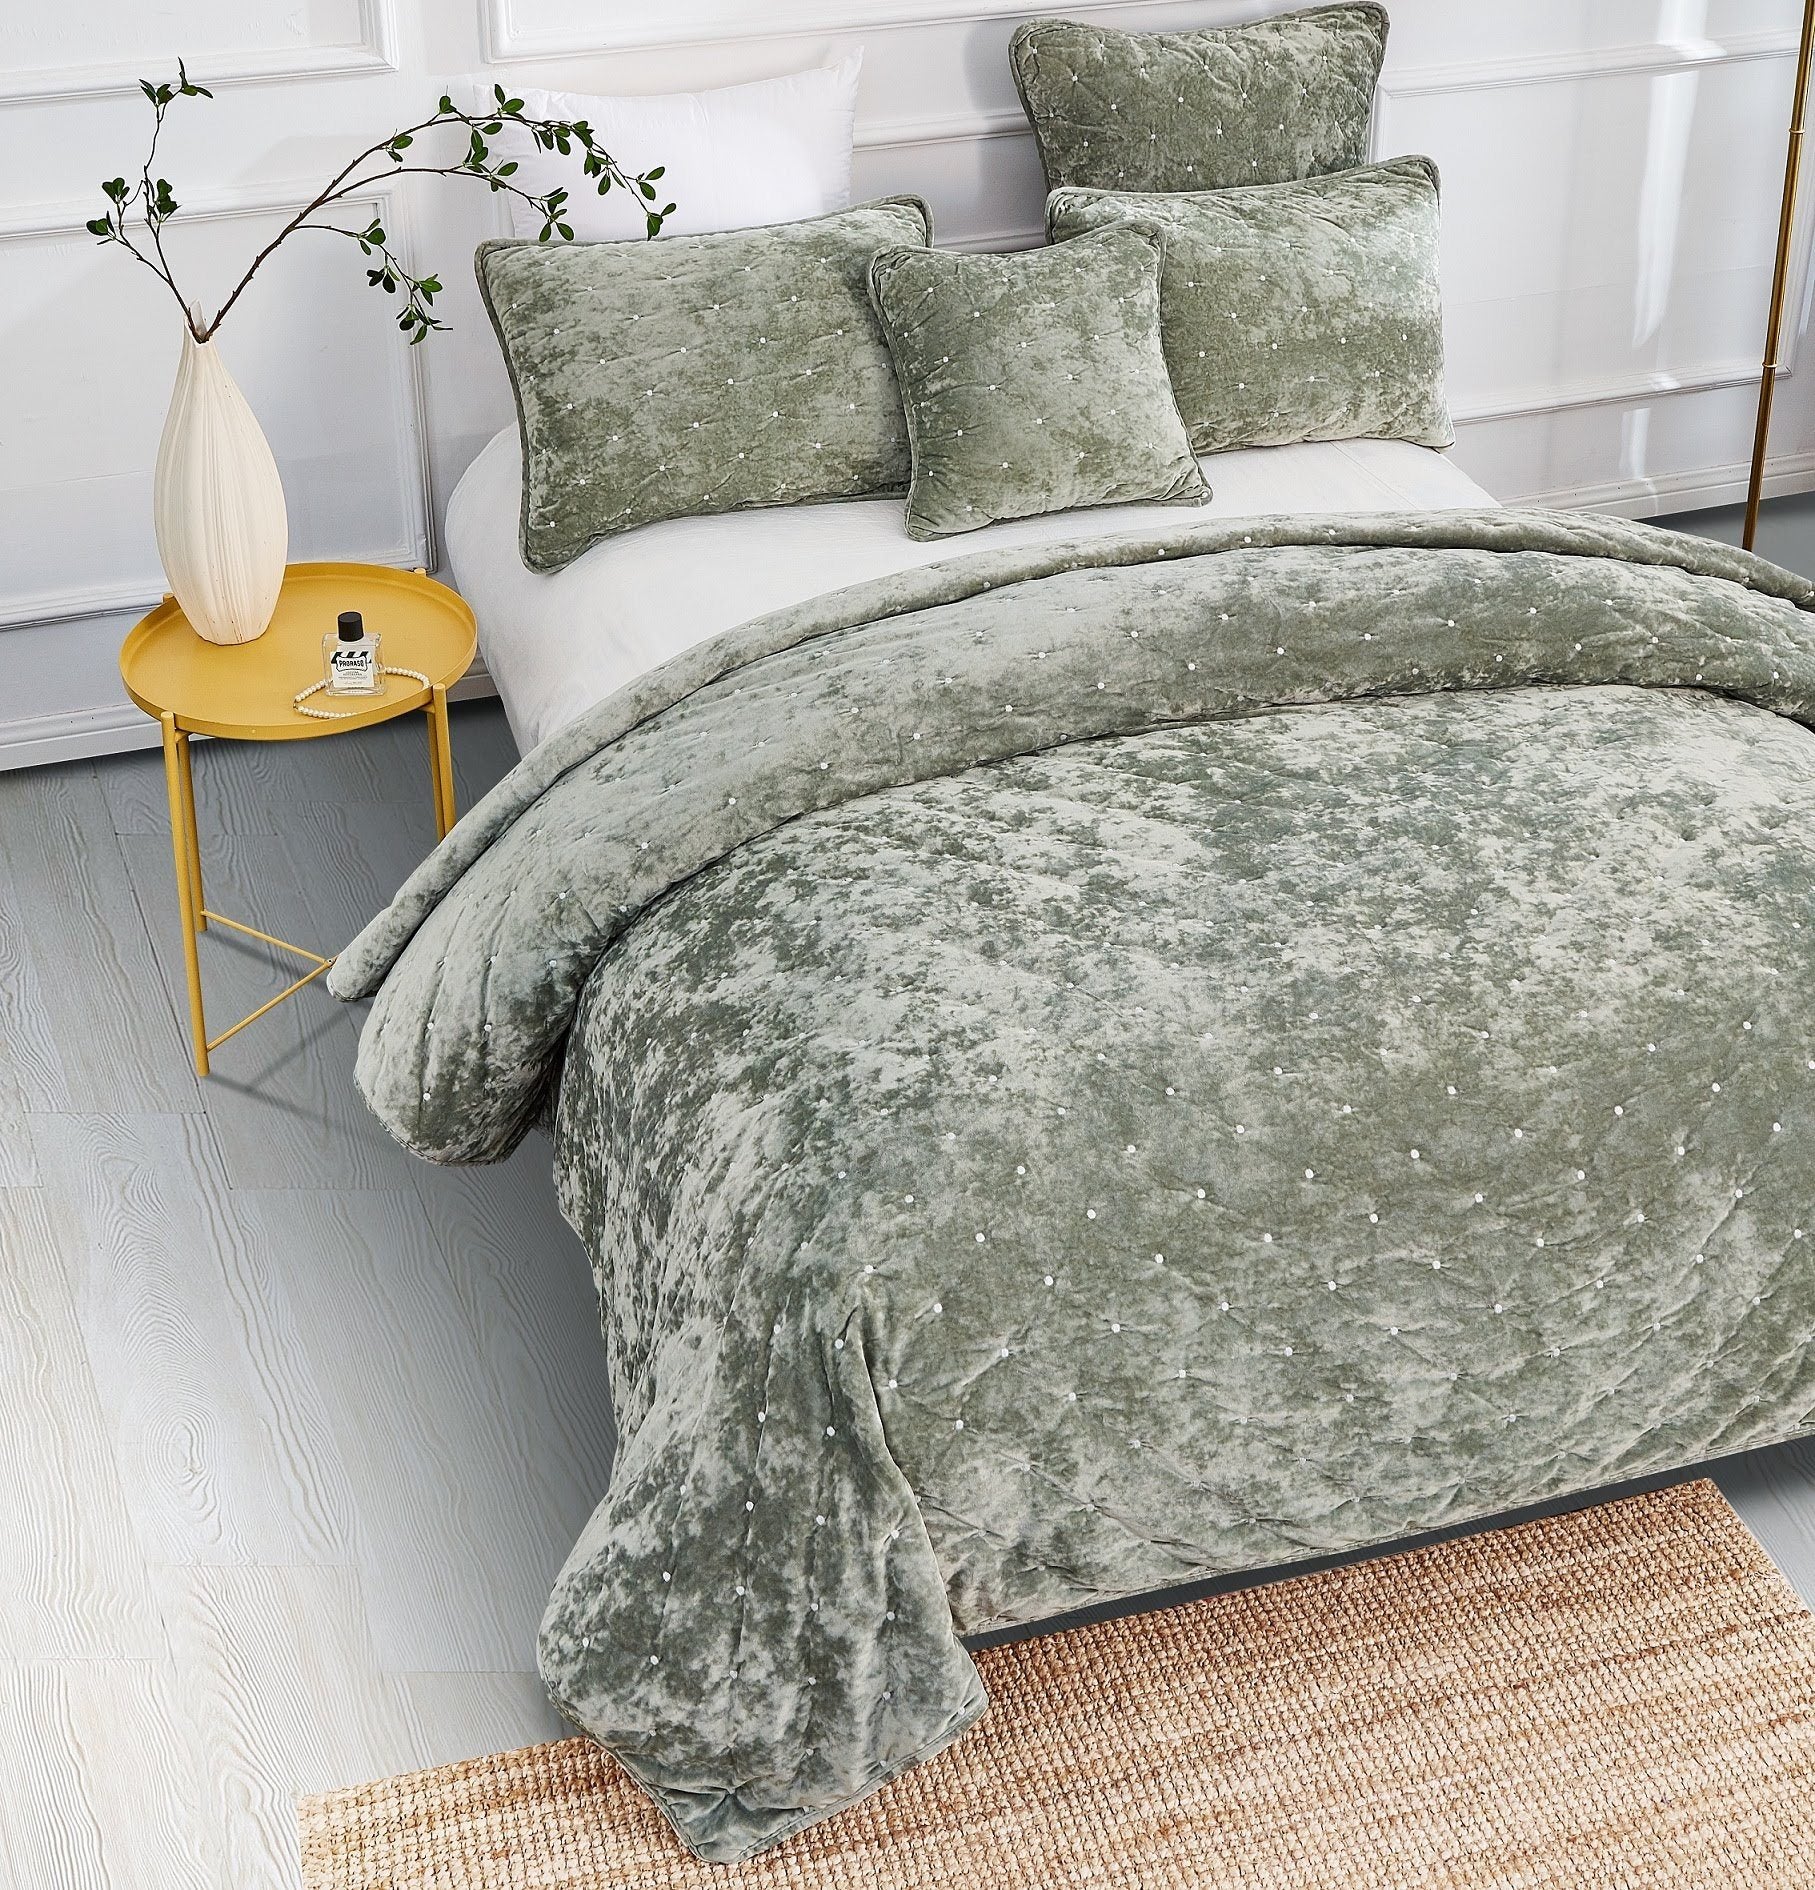 Tache Plush Dreams Light Sage Green Tufted Velvet Quilt Set (JHW-853G) - Tache Home Fashion